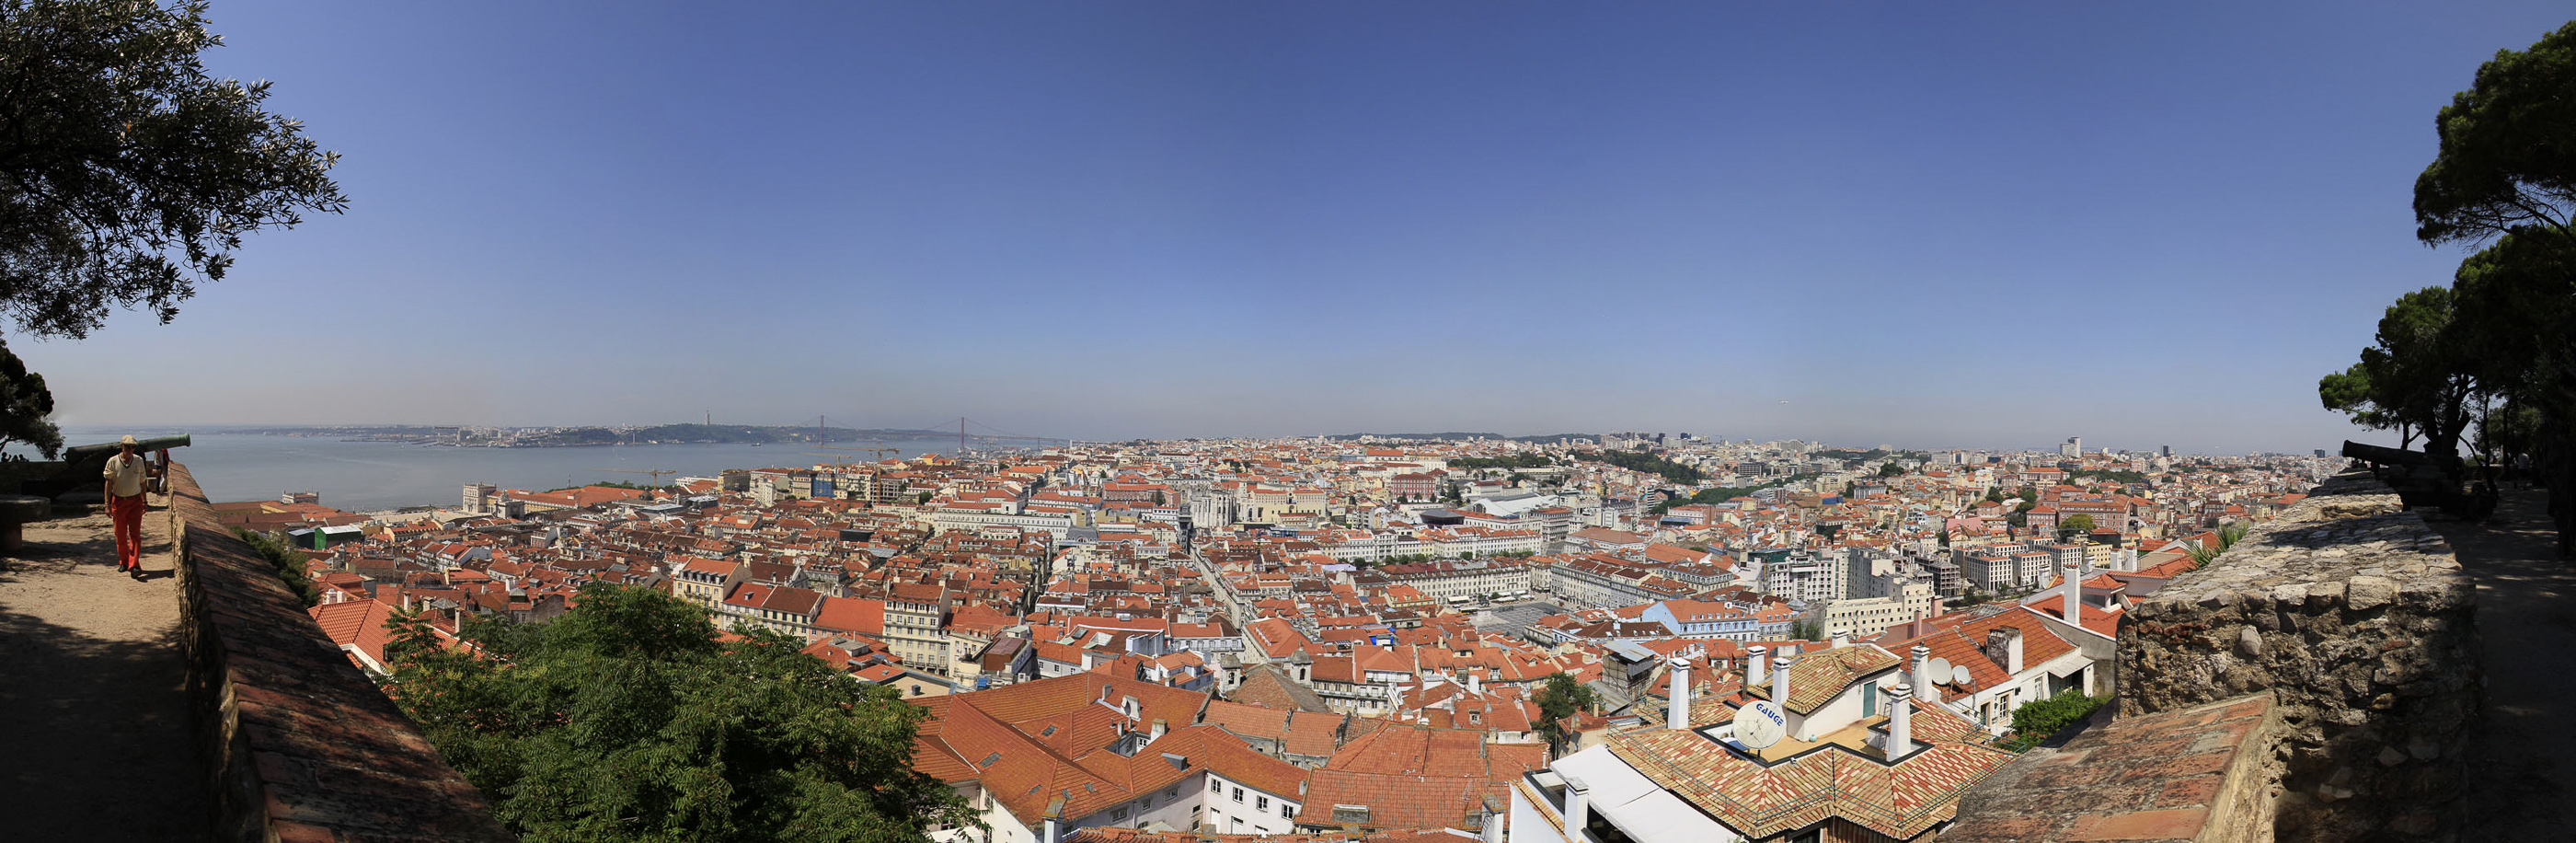 Lisabon-pano-001